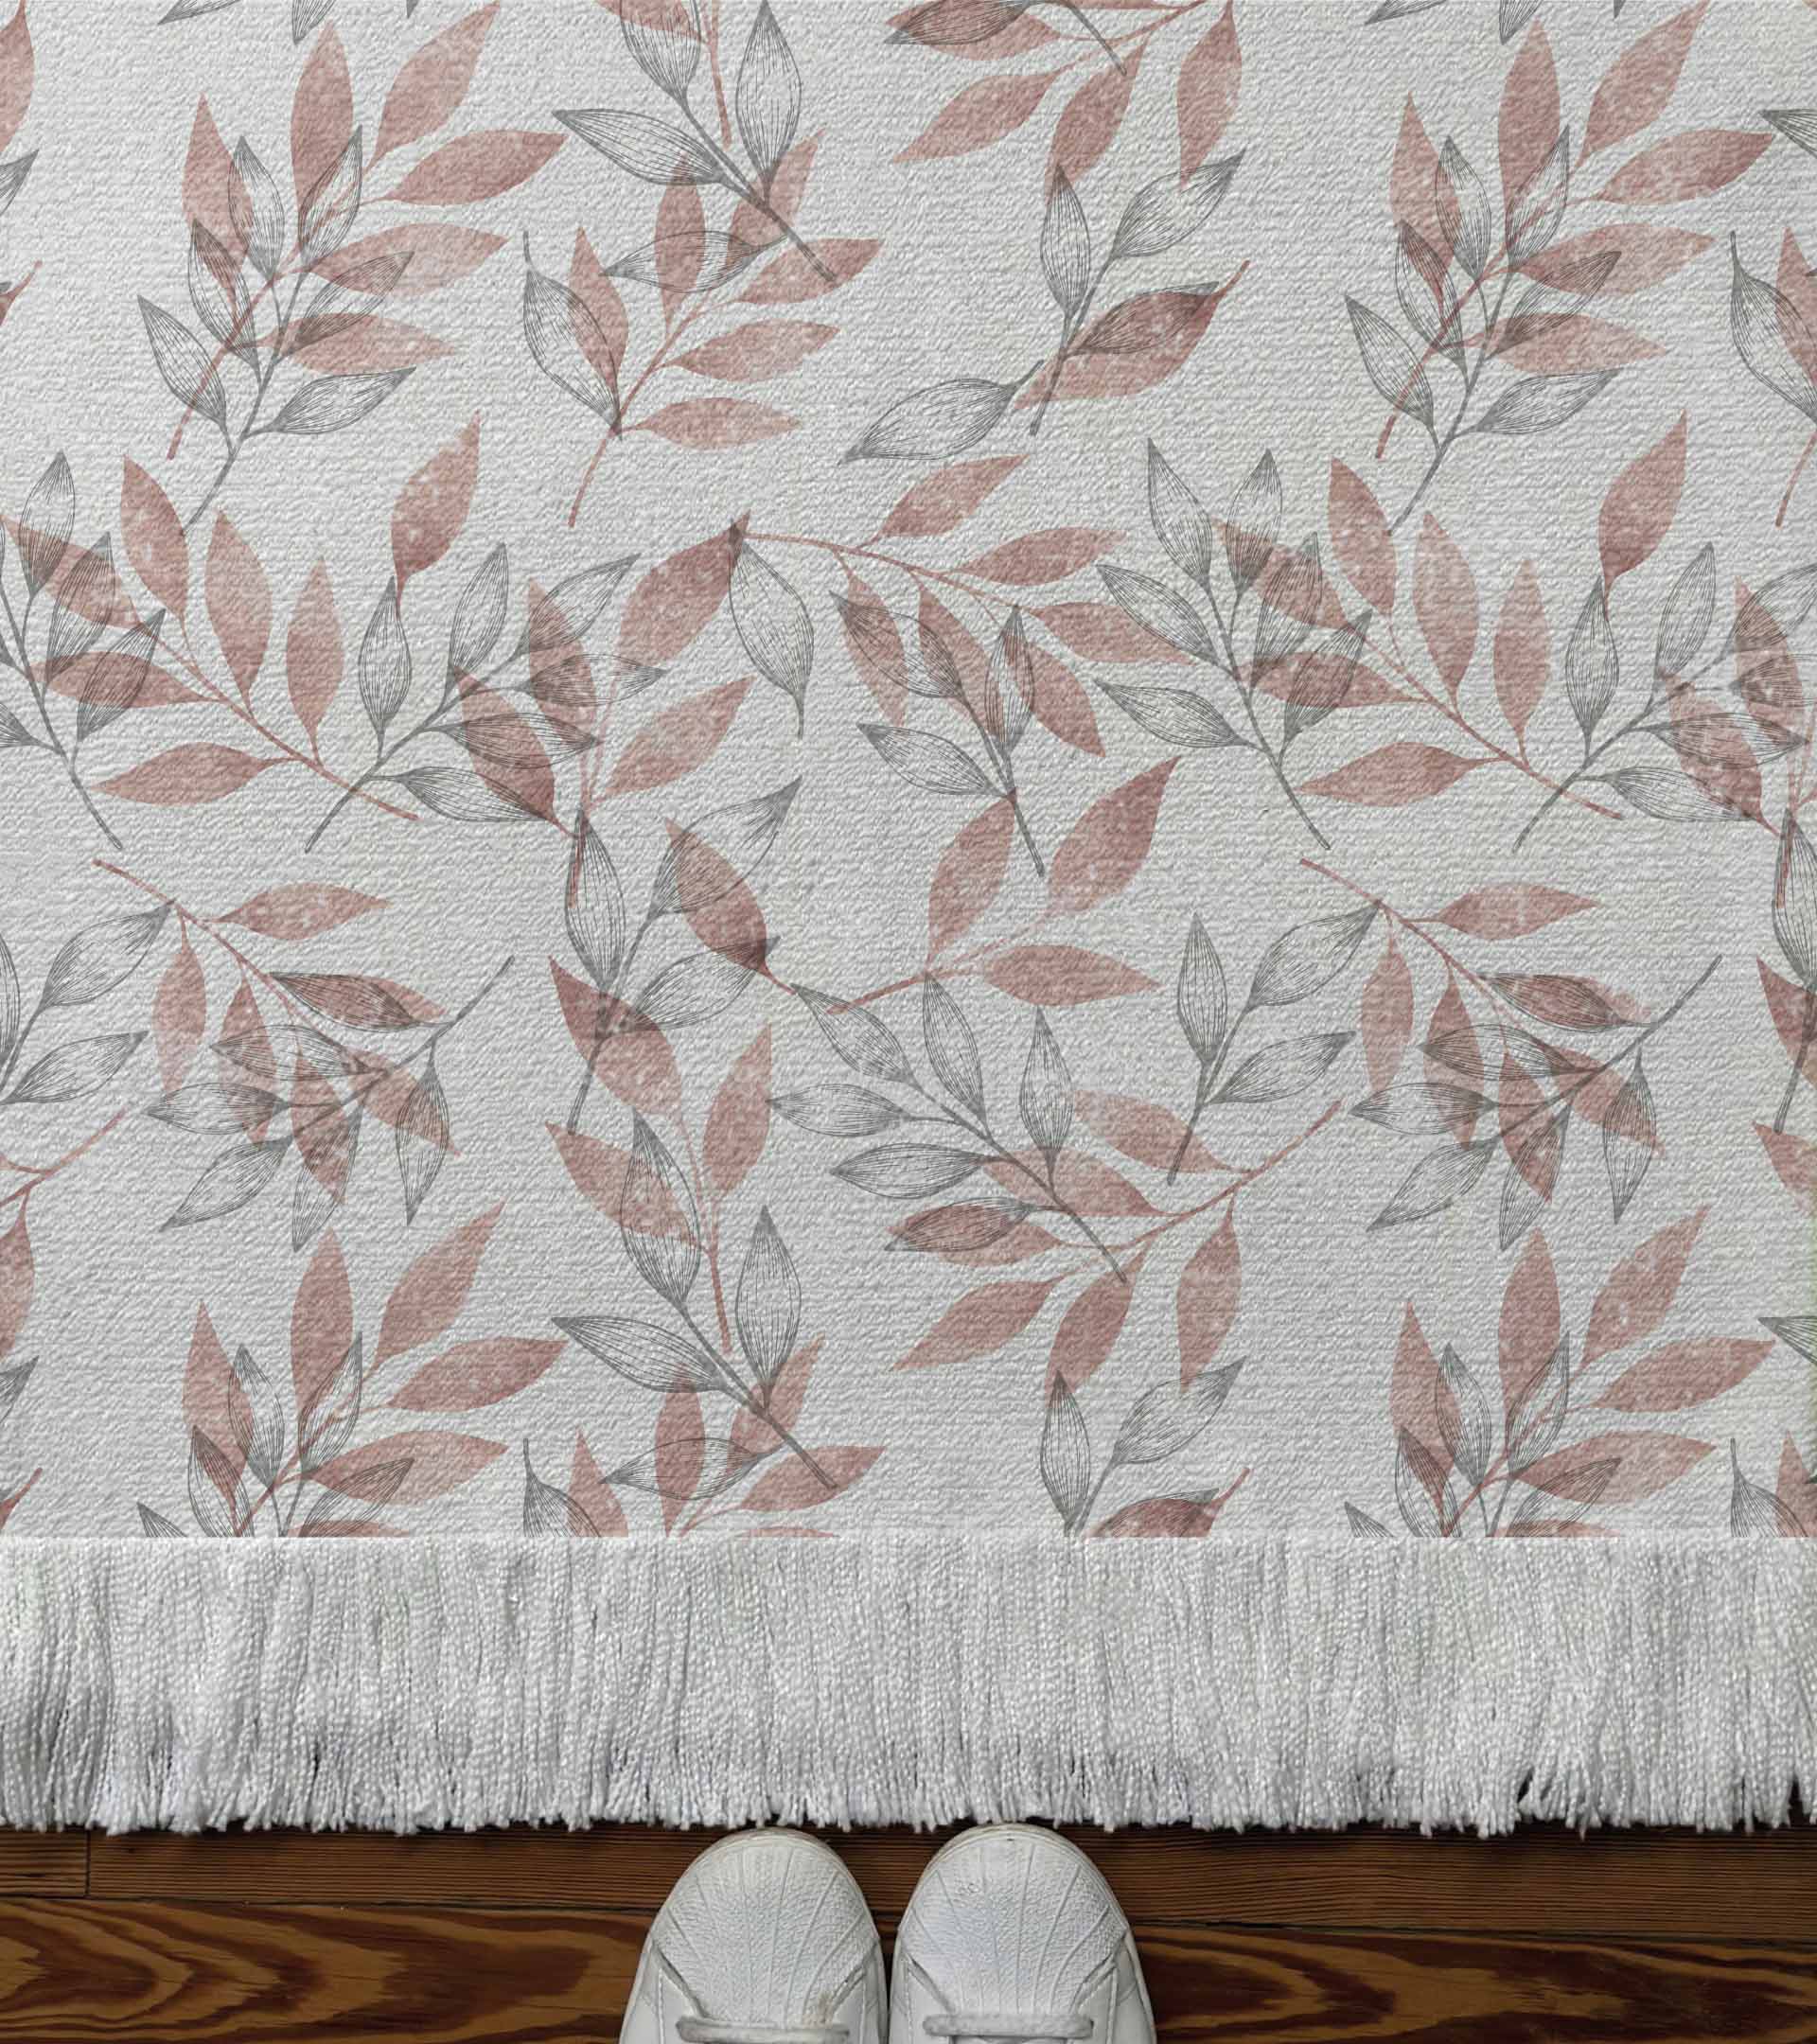 Alfombra tejida, diseño con hojas d ecolores, linea gris y color rosa. Naturaleza, botanico